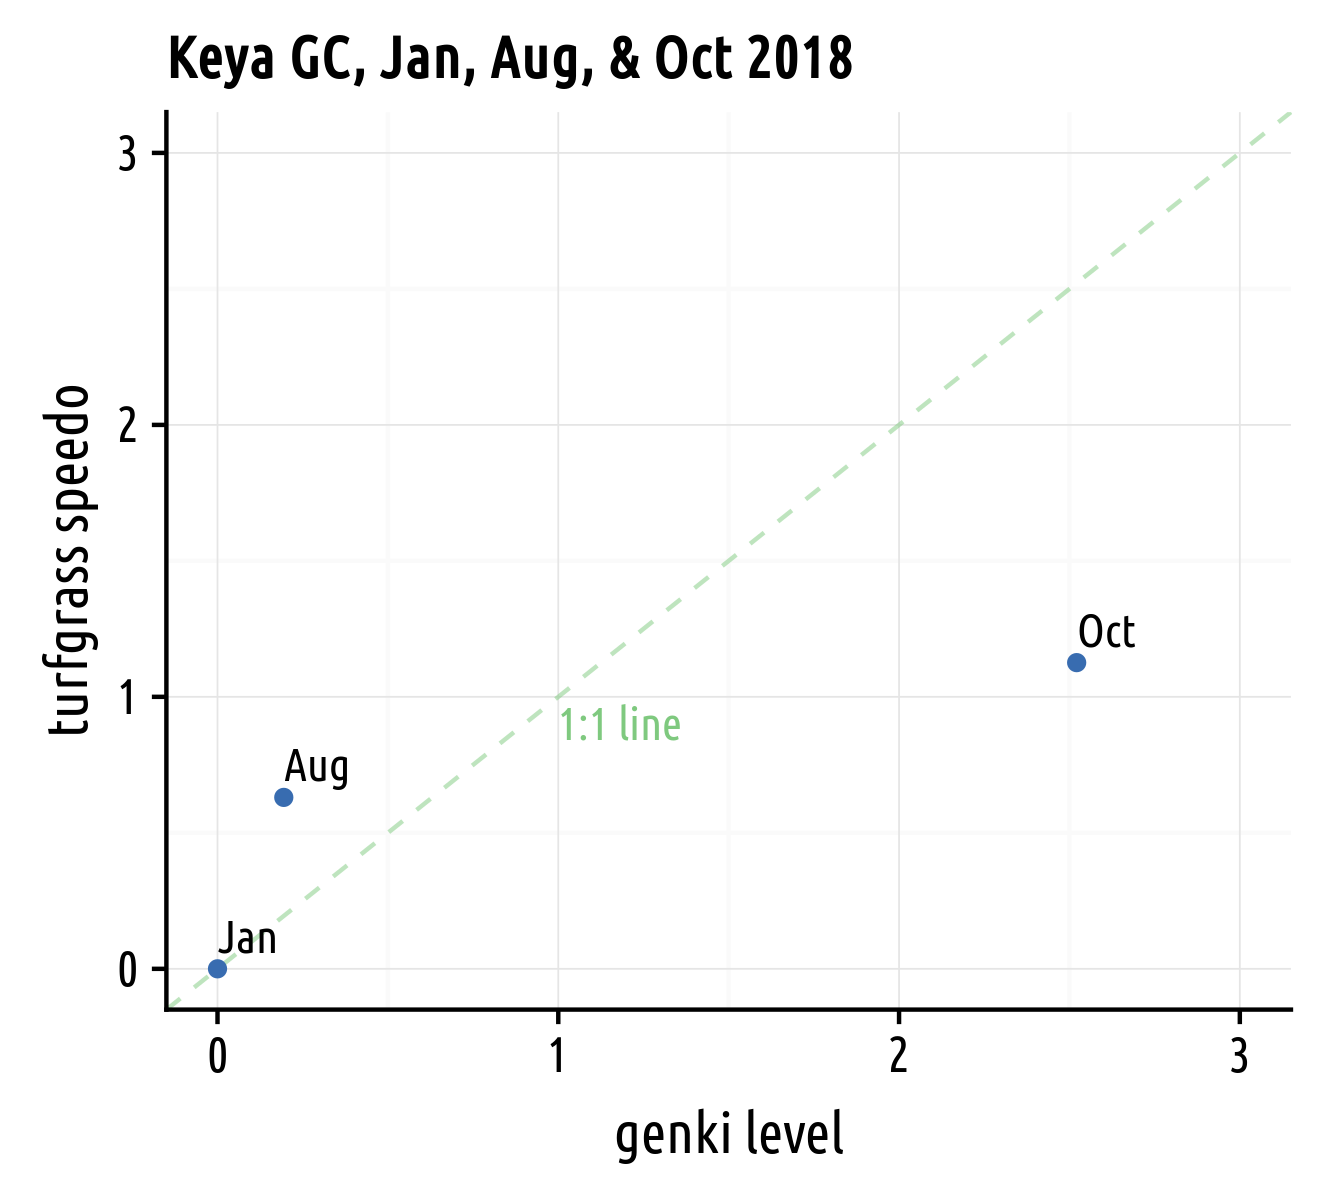 gl plotted vs speedo for 3 months in 2018 at Keya